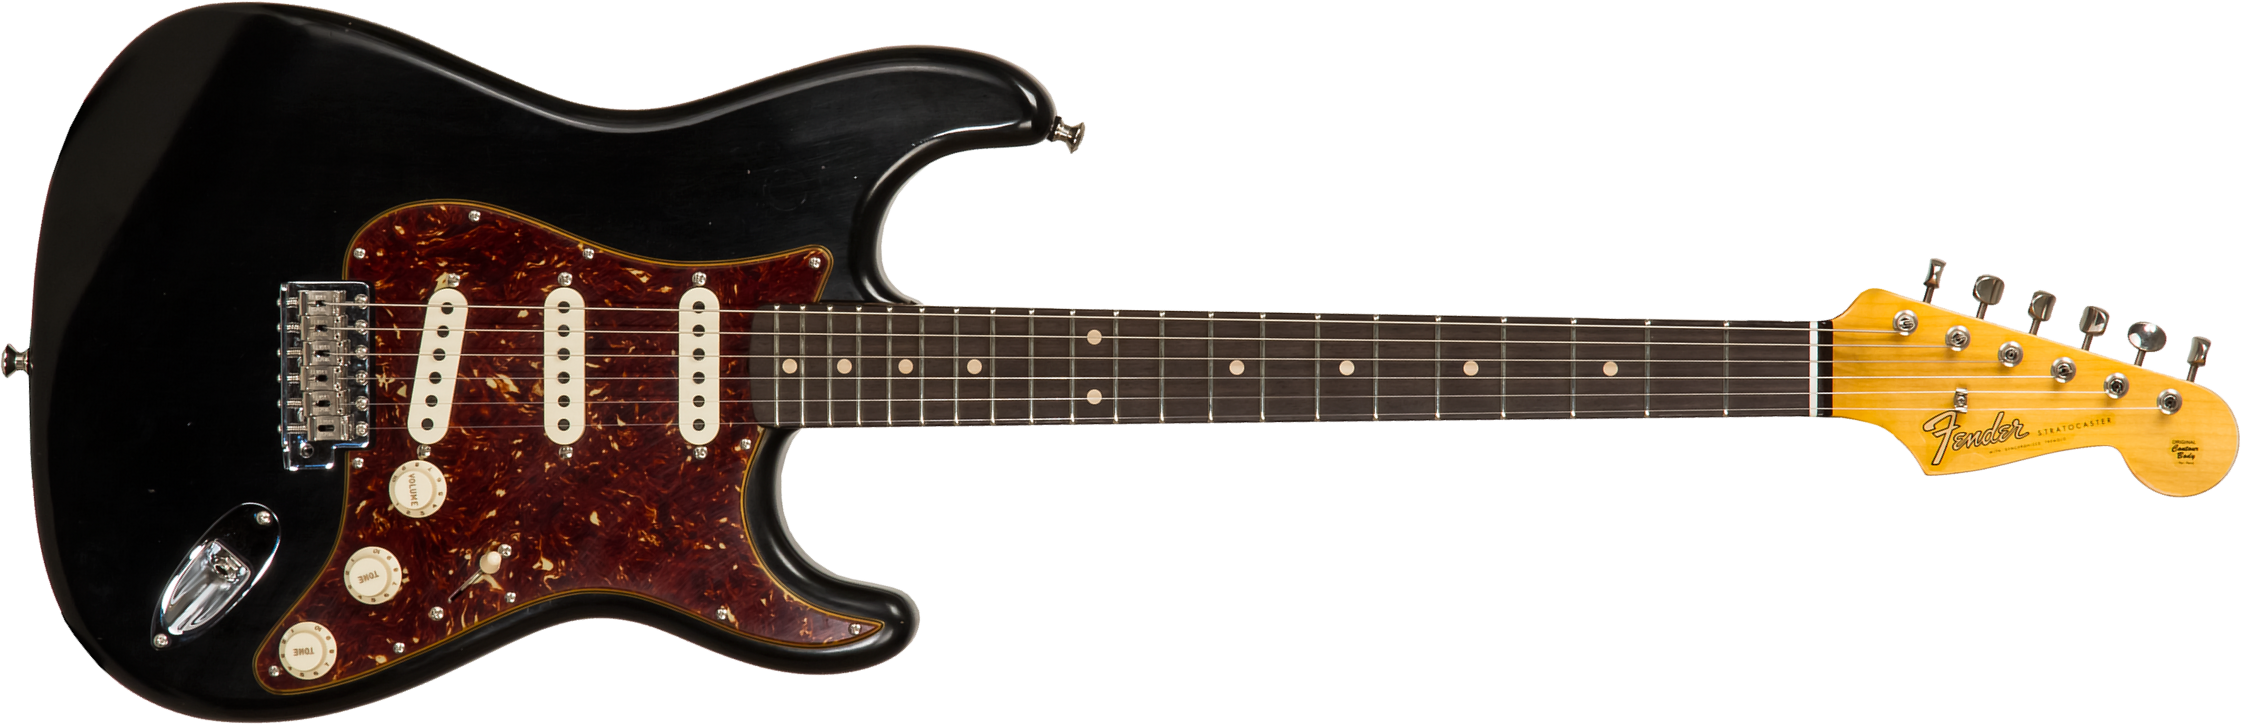 Fender Custom Shop Strat Postmodern 3s Trem Rw #xn13616 - Journeyman Relic Aged Black - Elektrische gitaar in Str-vorm - Main picture